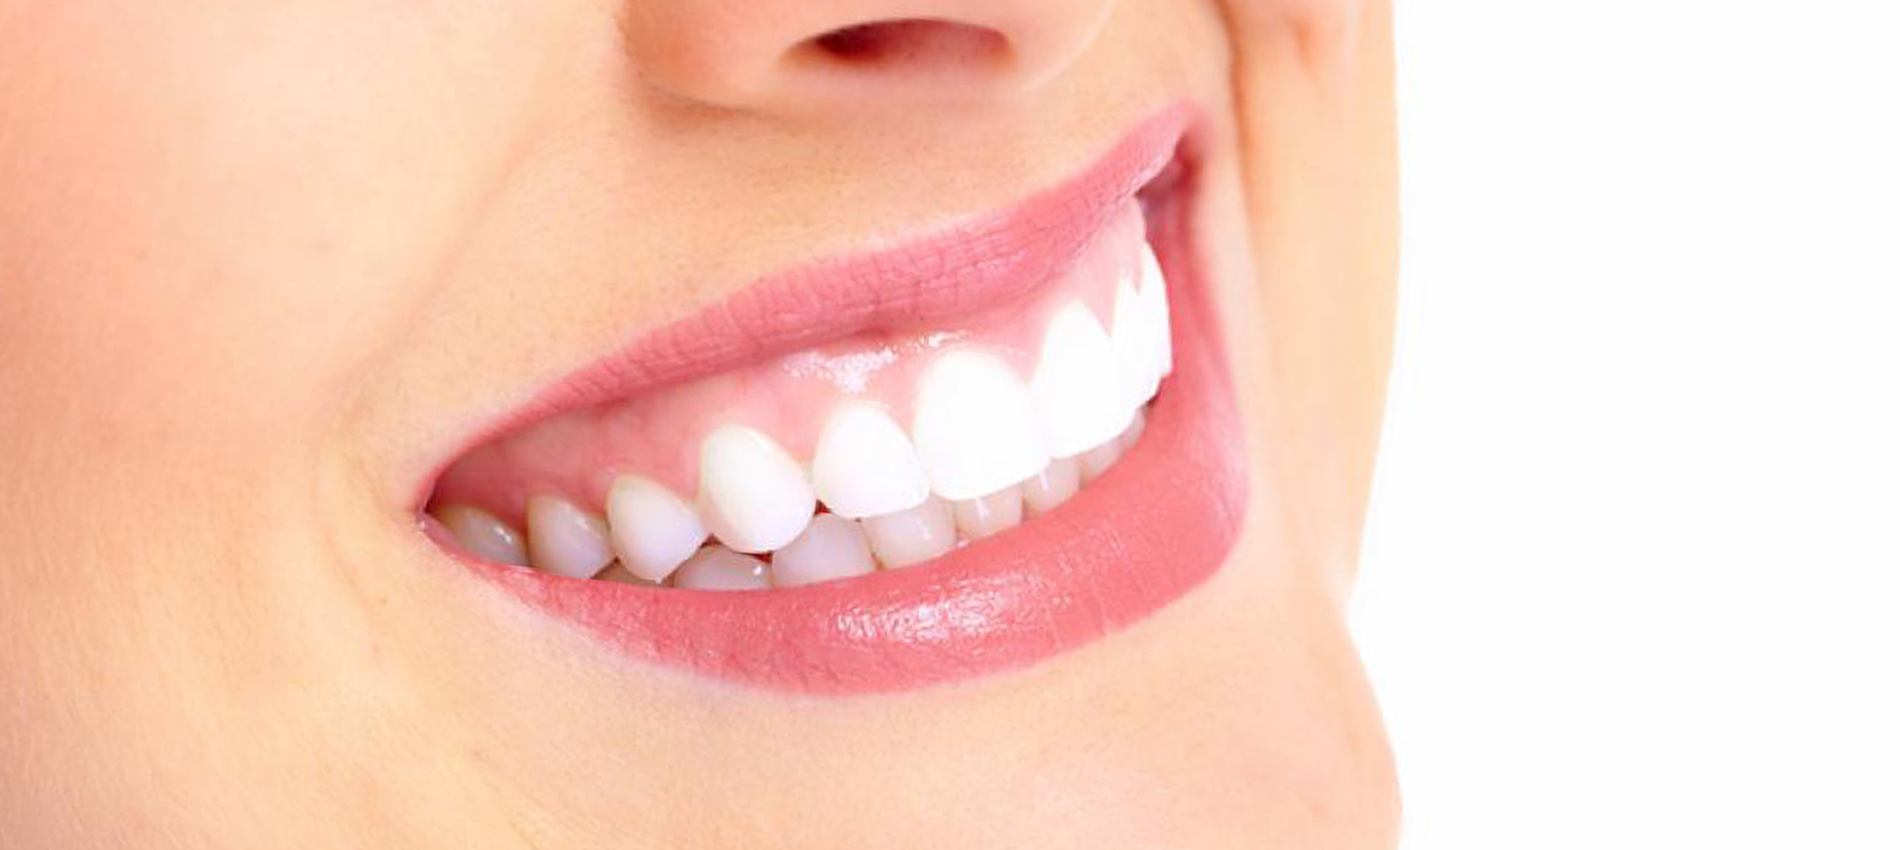 Distributie Speciaal Onverenigbaar Blog - Hoe krijg ik witte tanden? - Boozyshop